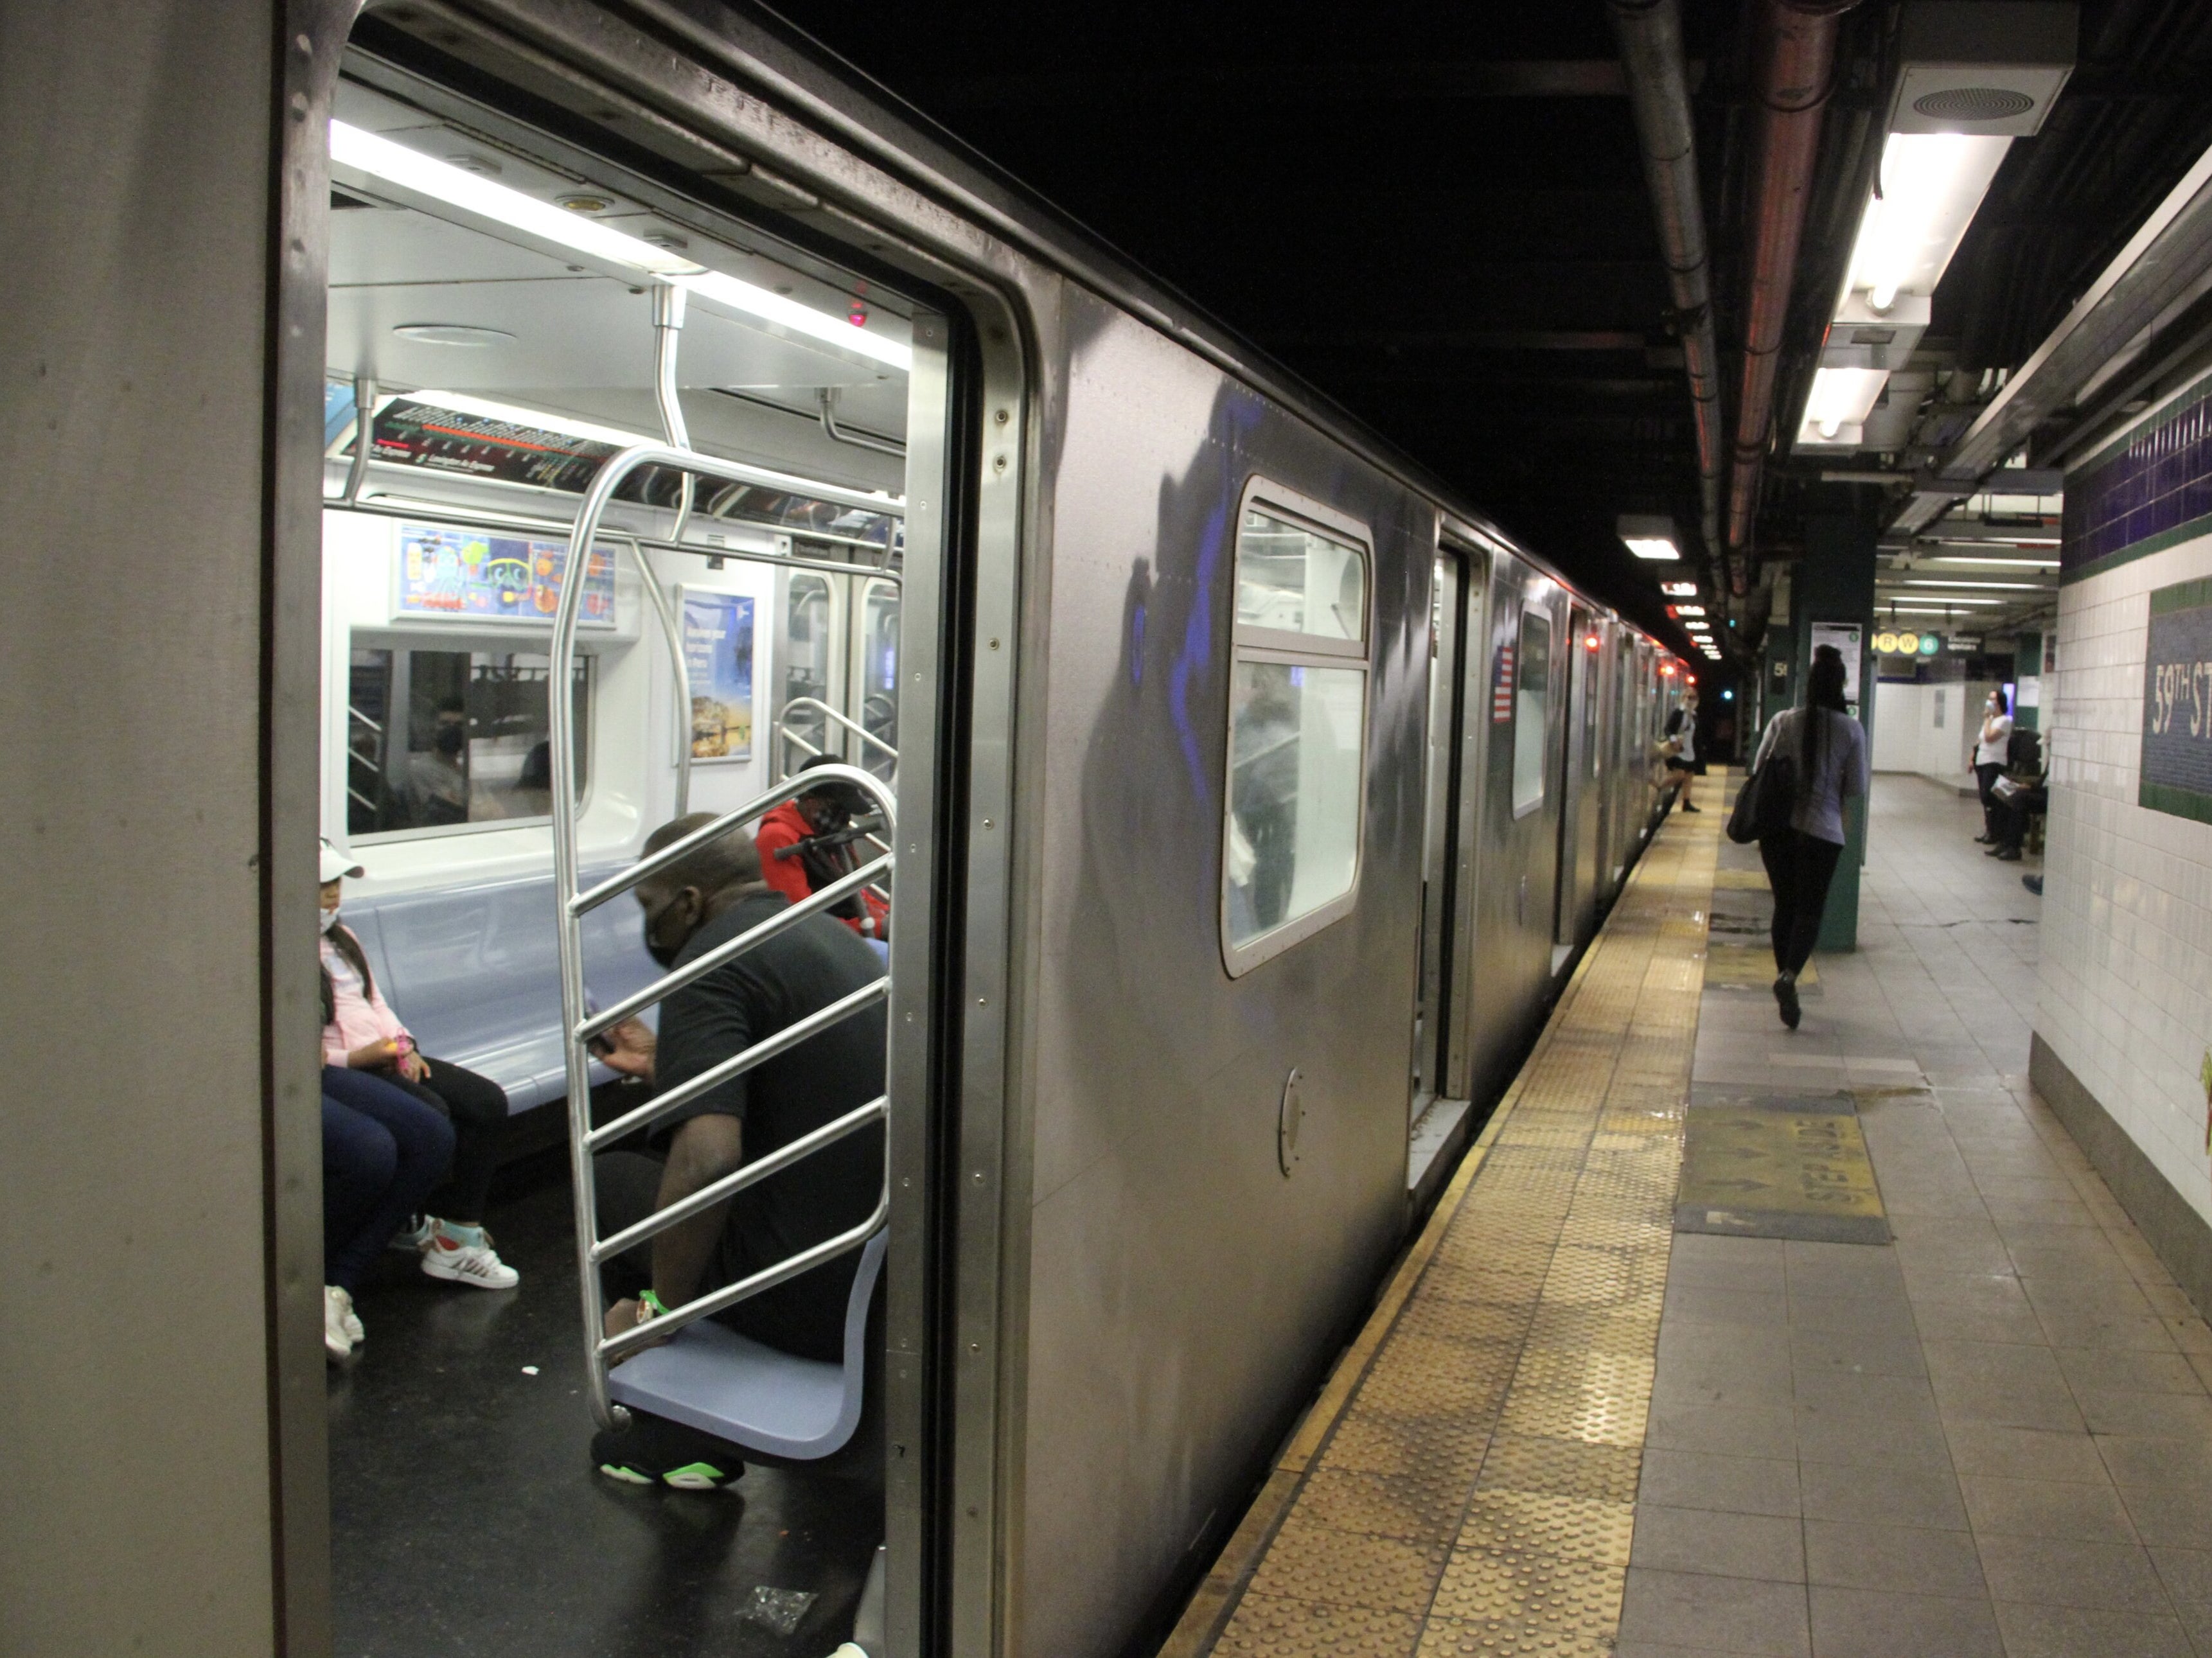 New York subway